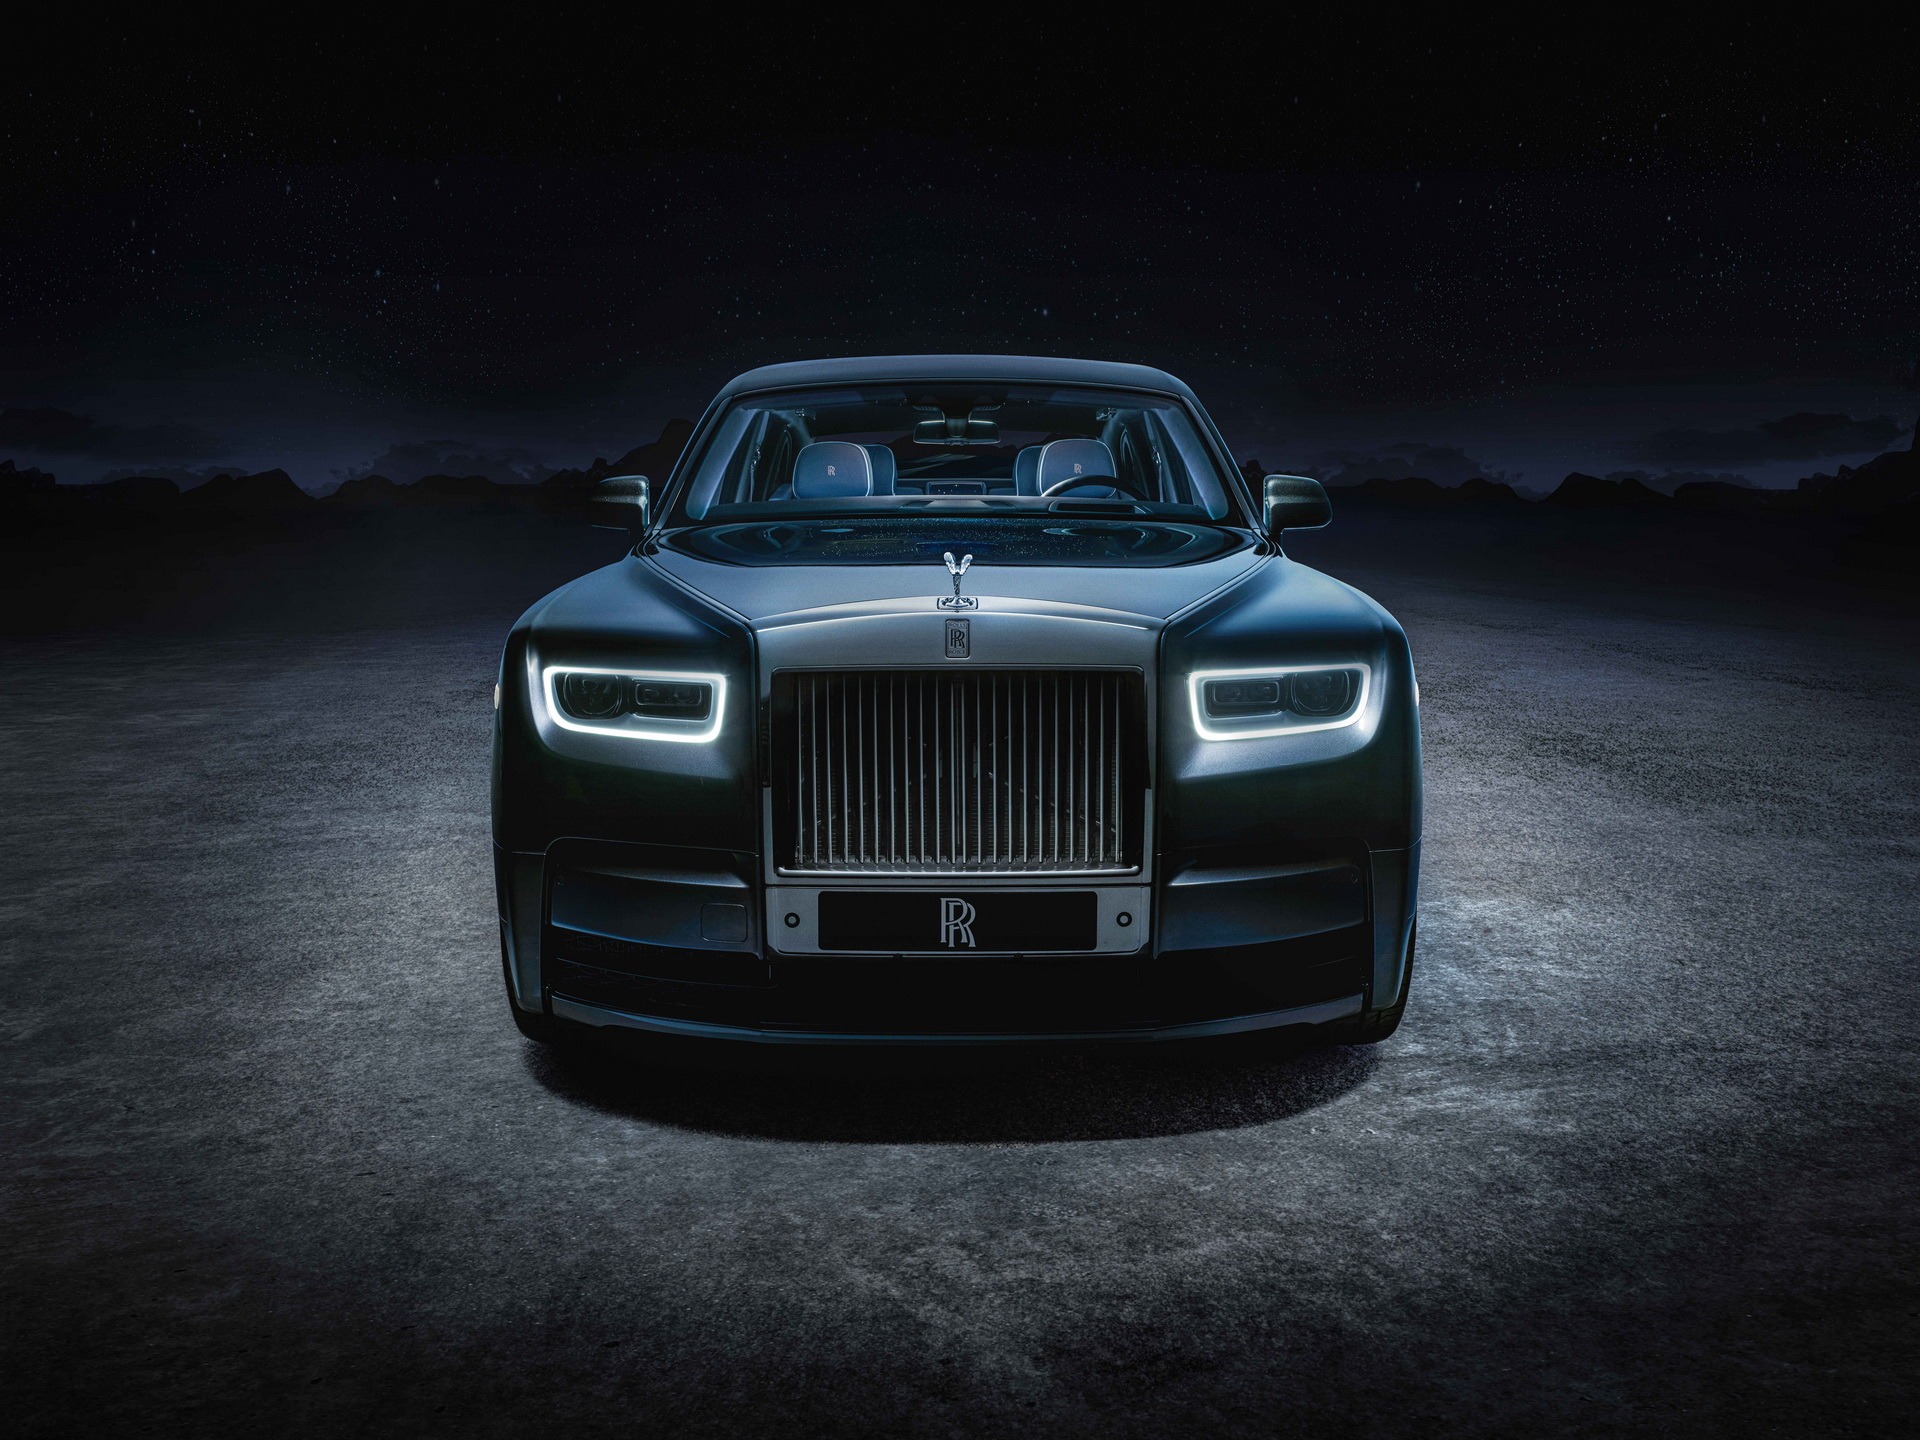 Rolls-Royce là một trong những thương hiệu ô tô cao cấp nhất thế giới, với động cơ và thiết kế đỉnh cao. Hãy thưởng thức hình ảnh của một chiếc Rolls-Royce để ngắm nhìn sự hoàn hảo và sang trọng vượt trội.